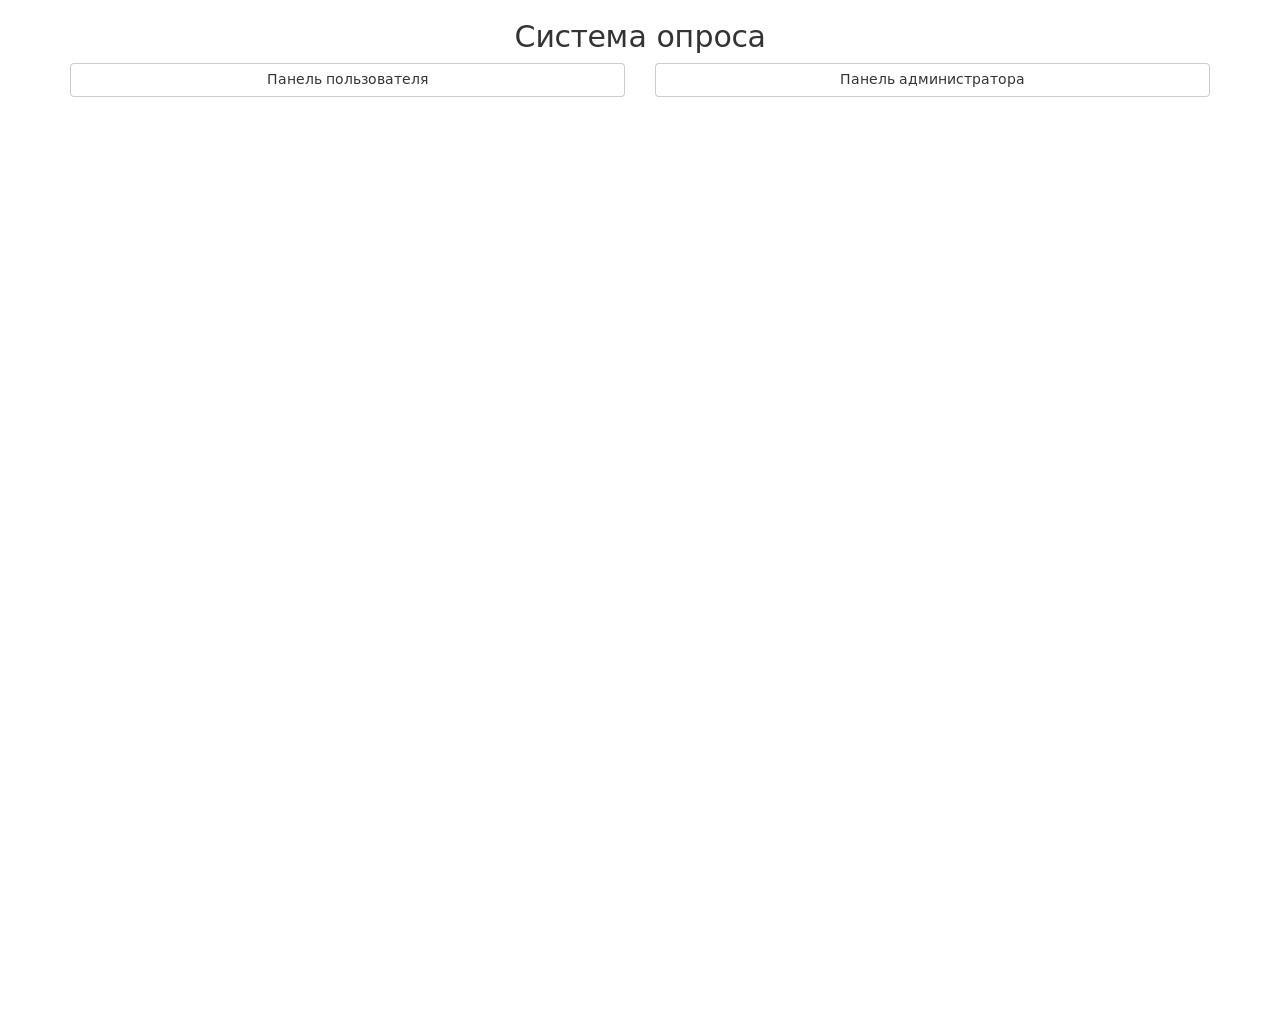 Изображение сайта tvoyopros.ru в разрешении 1280x1024